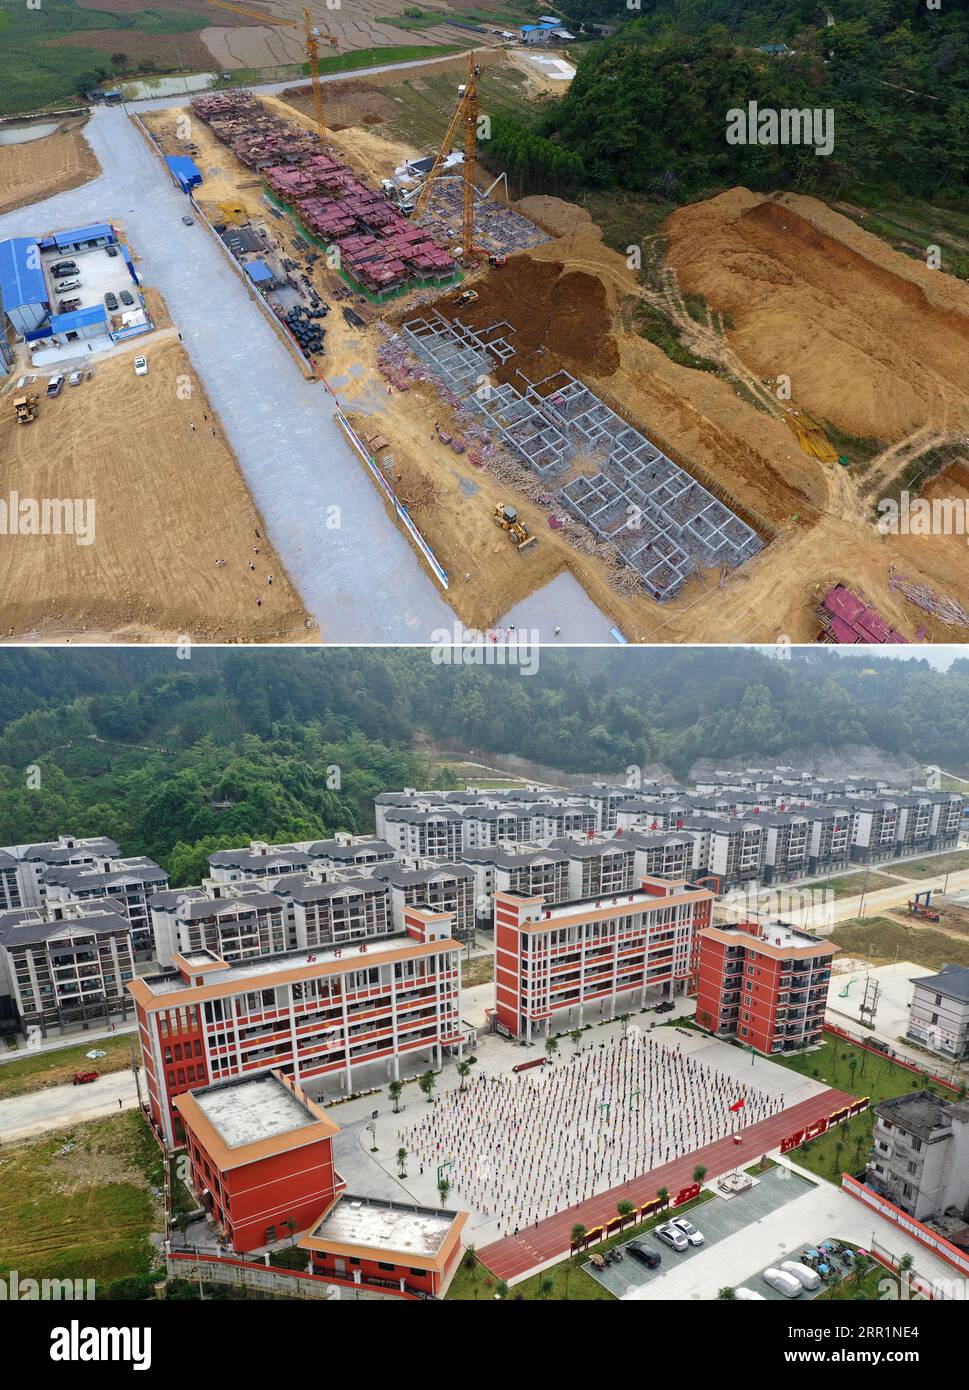 200922 -- NANNING, 22 settembre 2020 -- in questa foto combinata, la parte superiore scattata il 13 ottobre 2016 mostra una vista aerea di un sito di reinsediamento per la lotta alla povertà in costruzione nella città di Xia ao e nella parte inferiore, scattata il 25 aprile, il 2019 mostra una vista aerea del già costruito reinsediamento in soccorso della povertà nella città di Xia ao della contea autonoma di Du aan Yao, nella regione autonoma del Guangxi Zhuang della Cina meridionale. Negli ultimi cinque anni, la regione autonoma di Guangxi Zhuang ha condotto una serie di progetti di riduzione della povertà, come accelerare la costruzione di infrastrutture di trasporto nelle aree povere, l'automobile Foto Stock